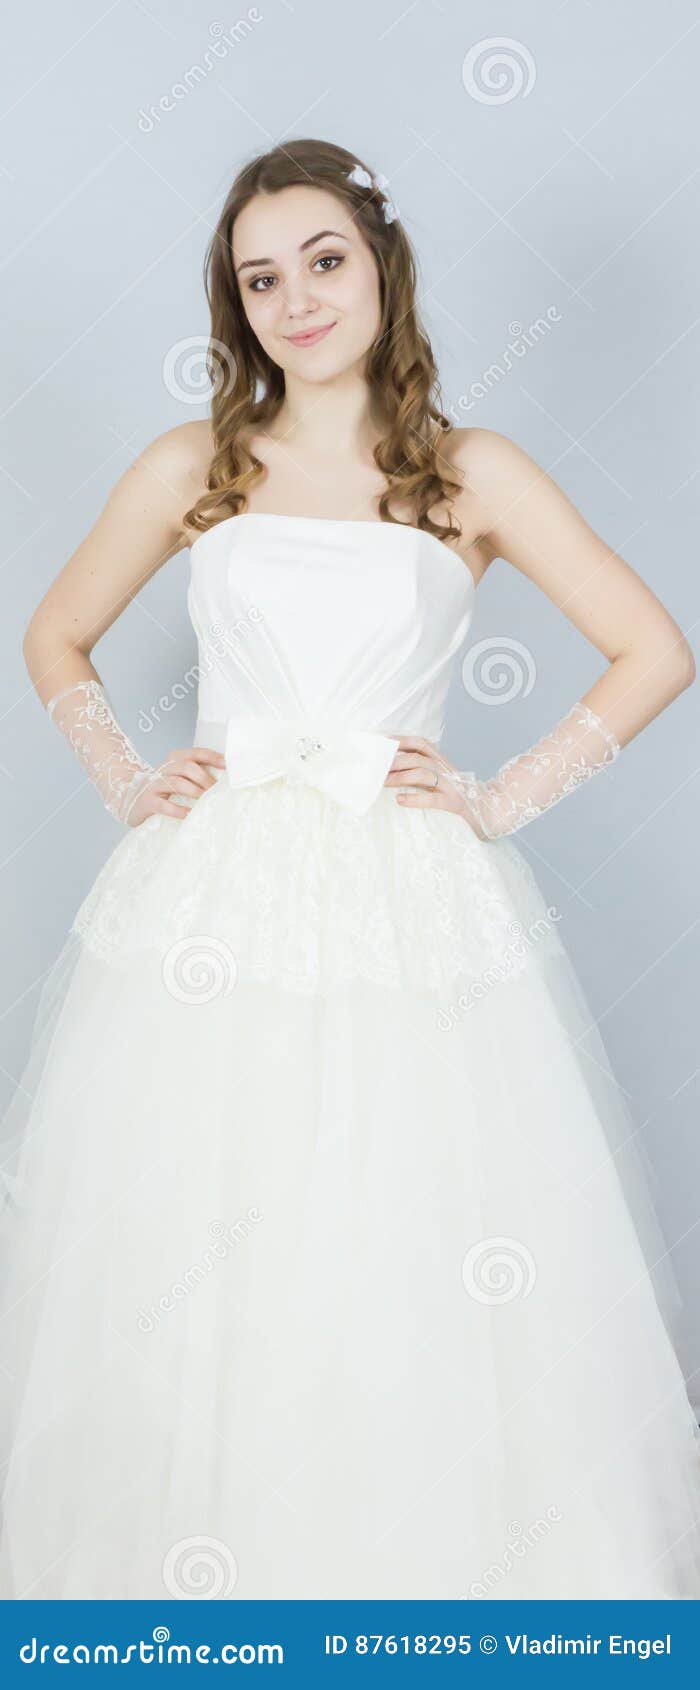 Beautiful Bride on White Background. Dress Stock Image - Image of ...